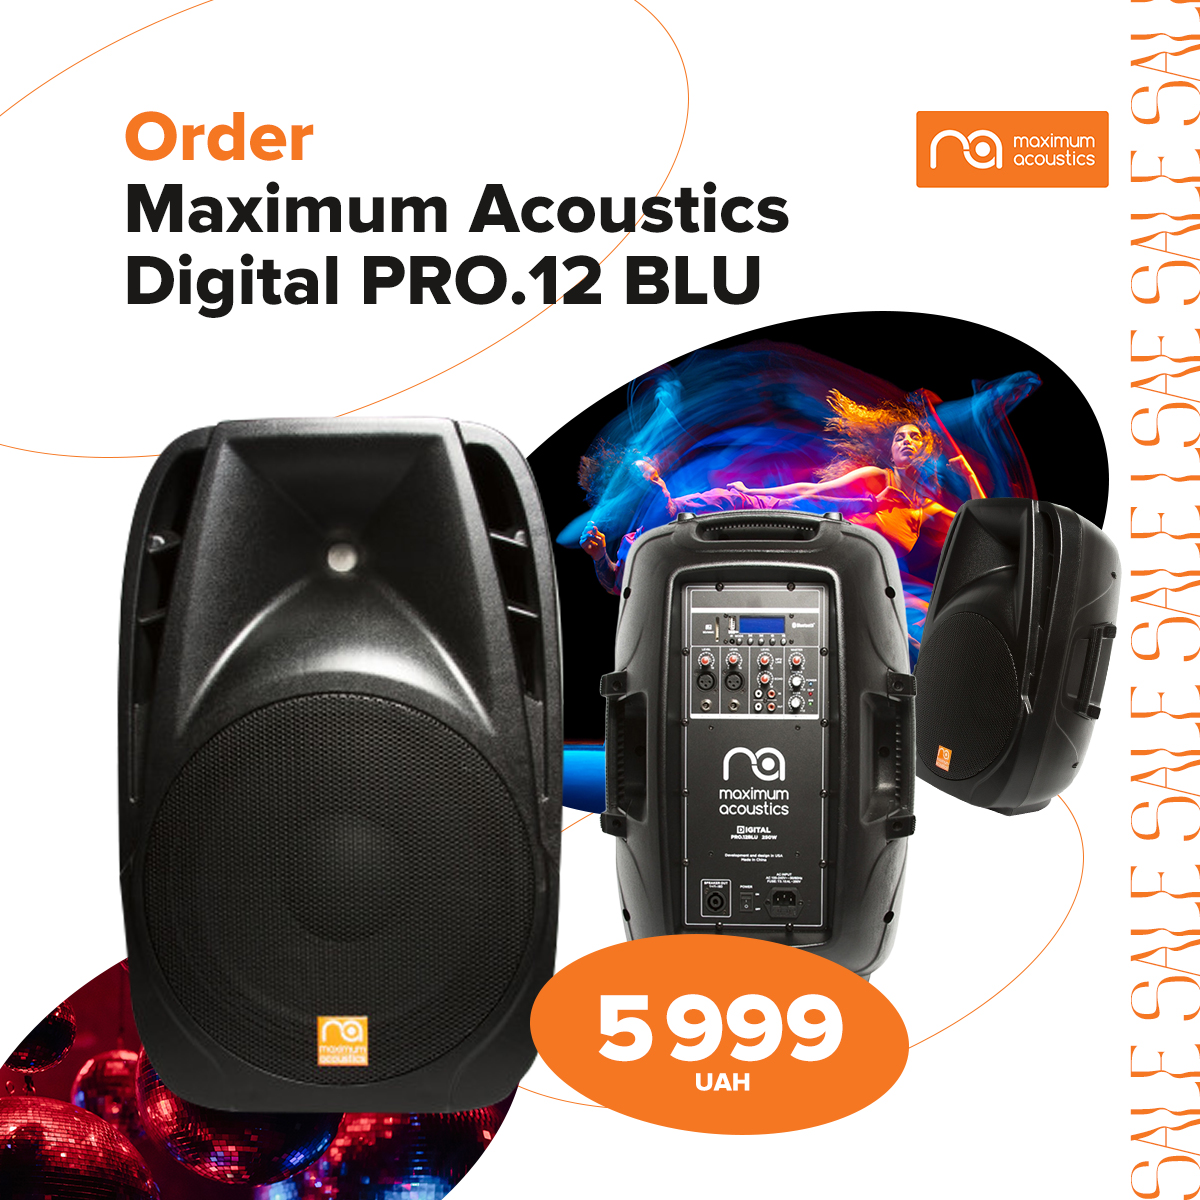 Купите акустическую систему Digital PRO.12 BLU по акционной цене 5999 грн